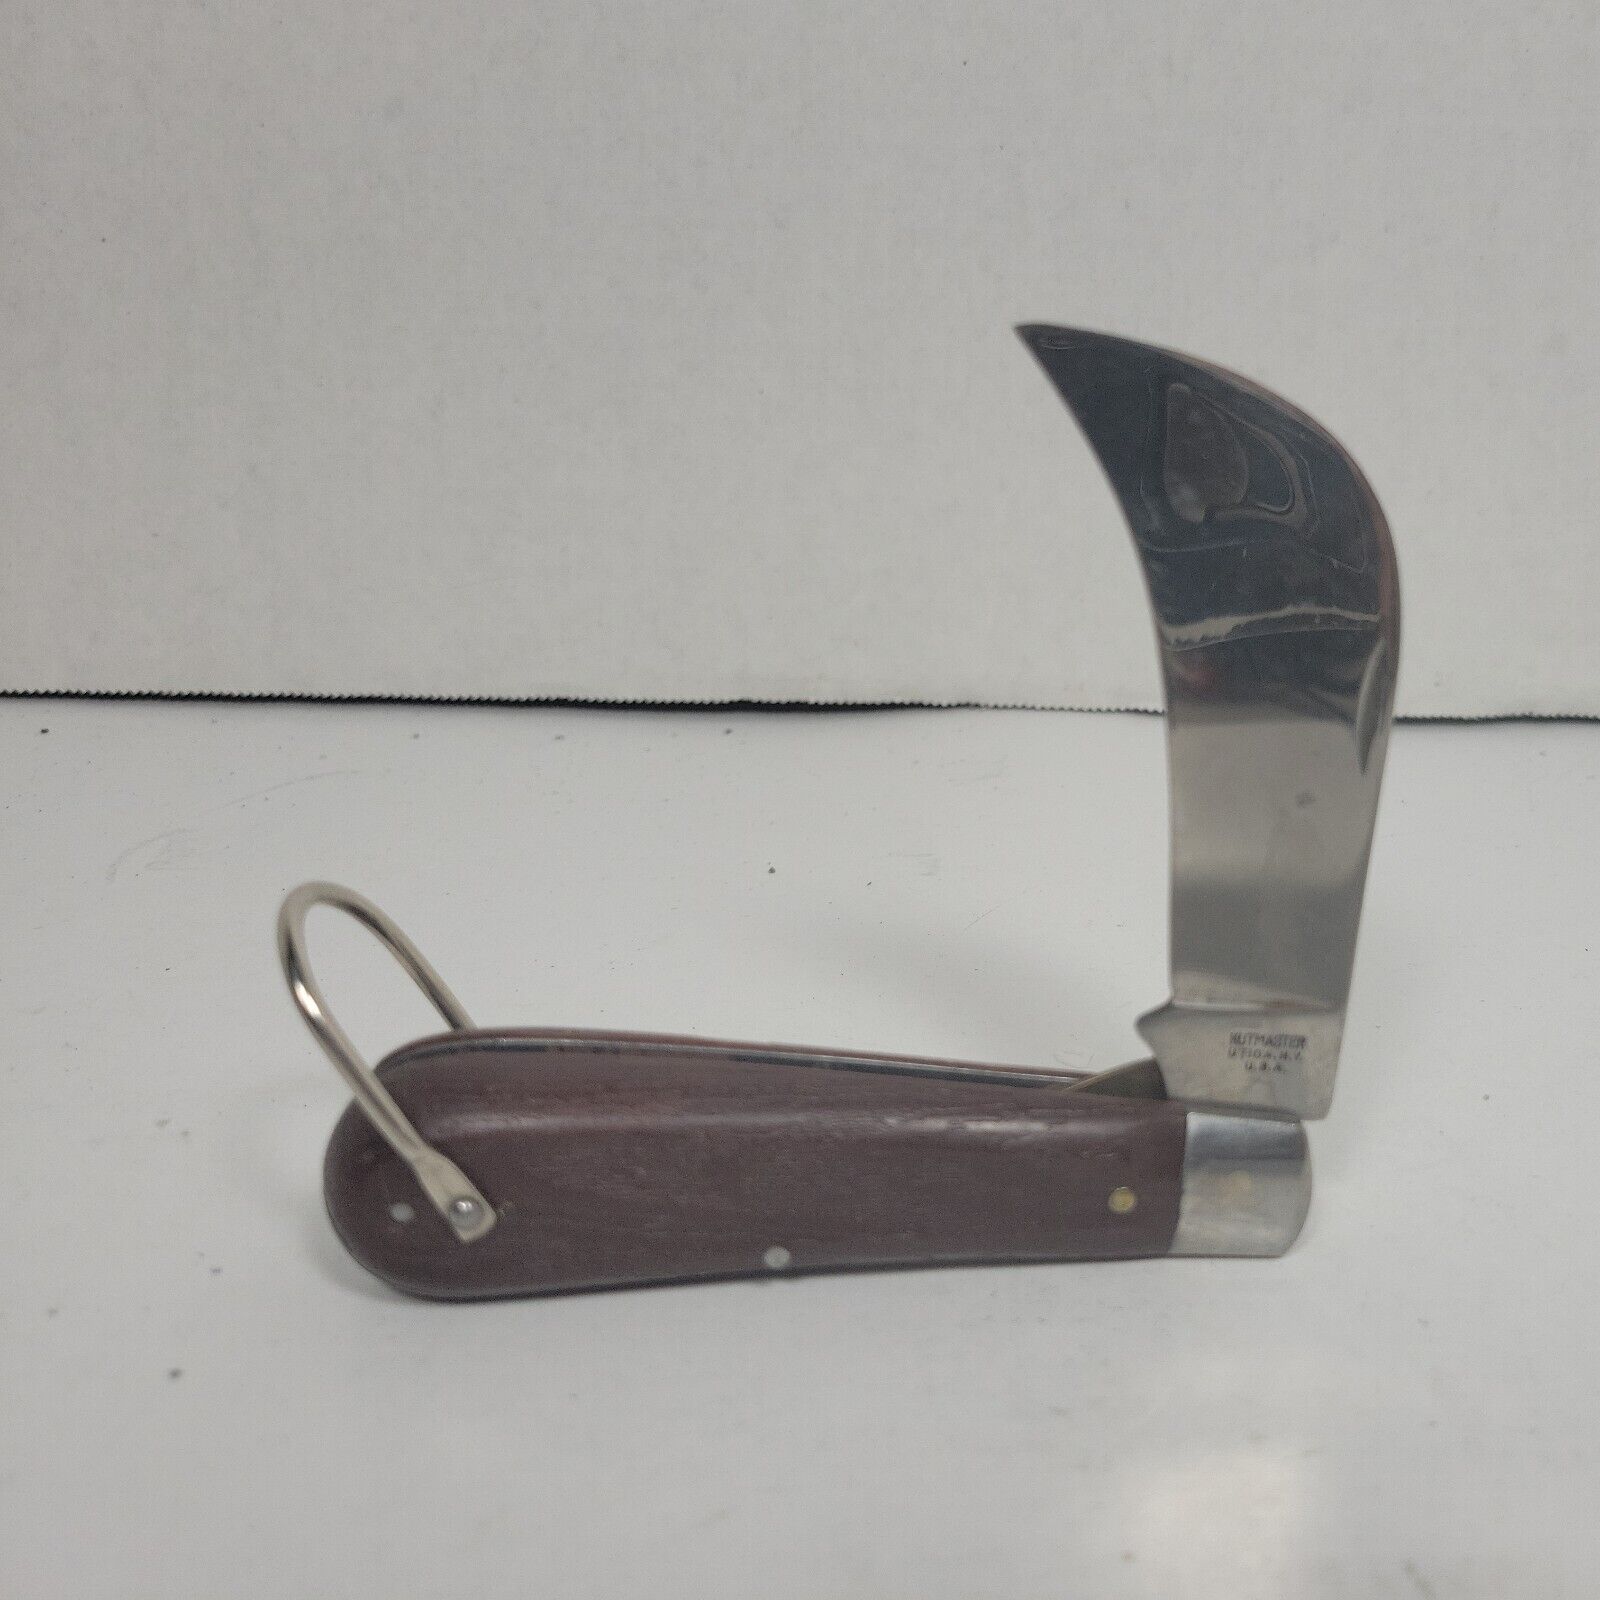 Vintage Kutmaster Utica Hawkbill Folding Pocket Knife W/Loop, New. Made in USA